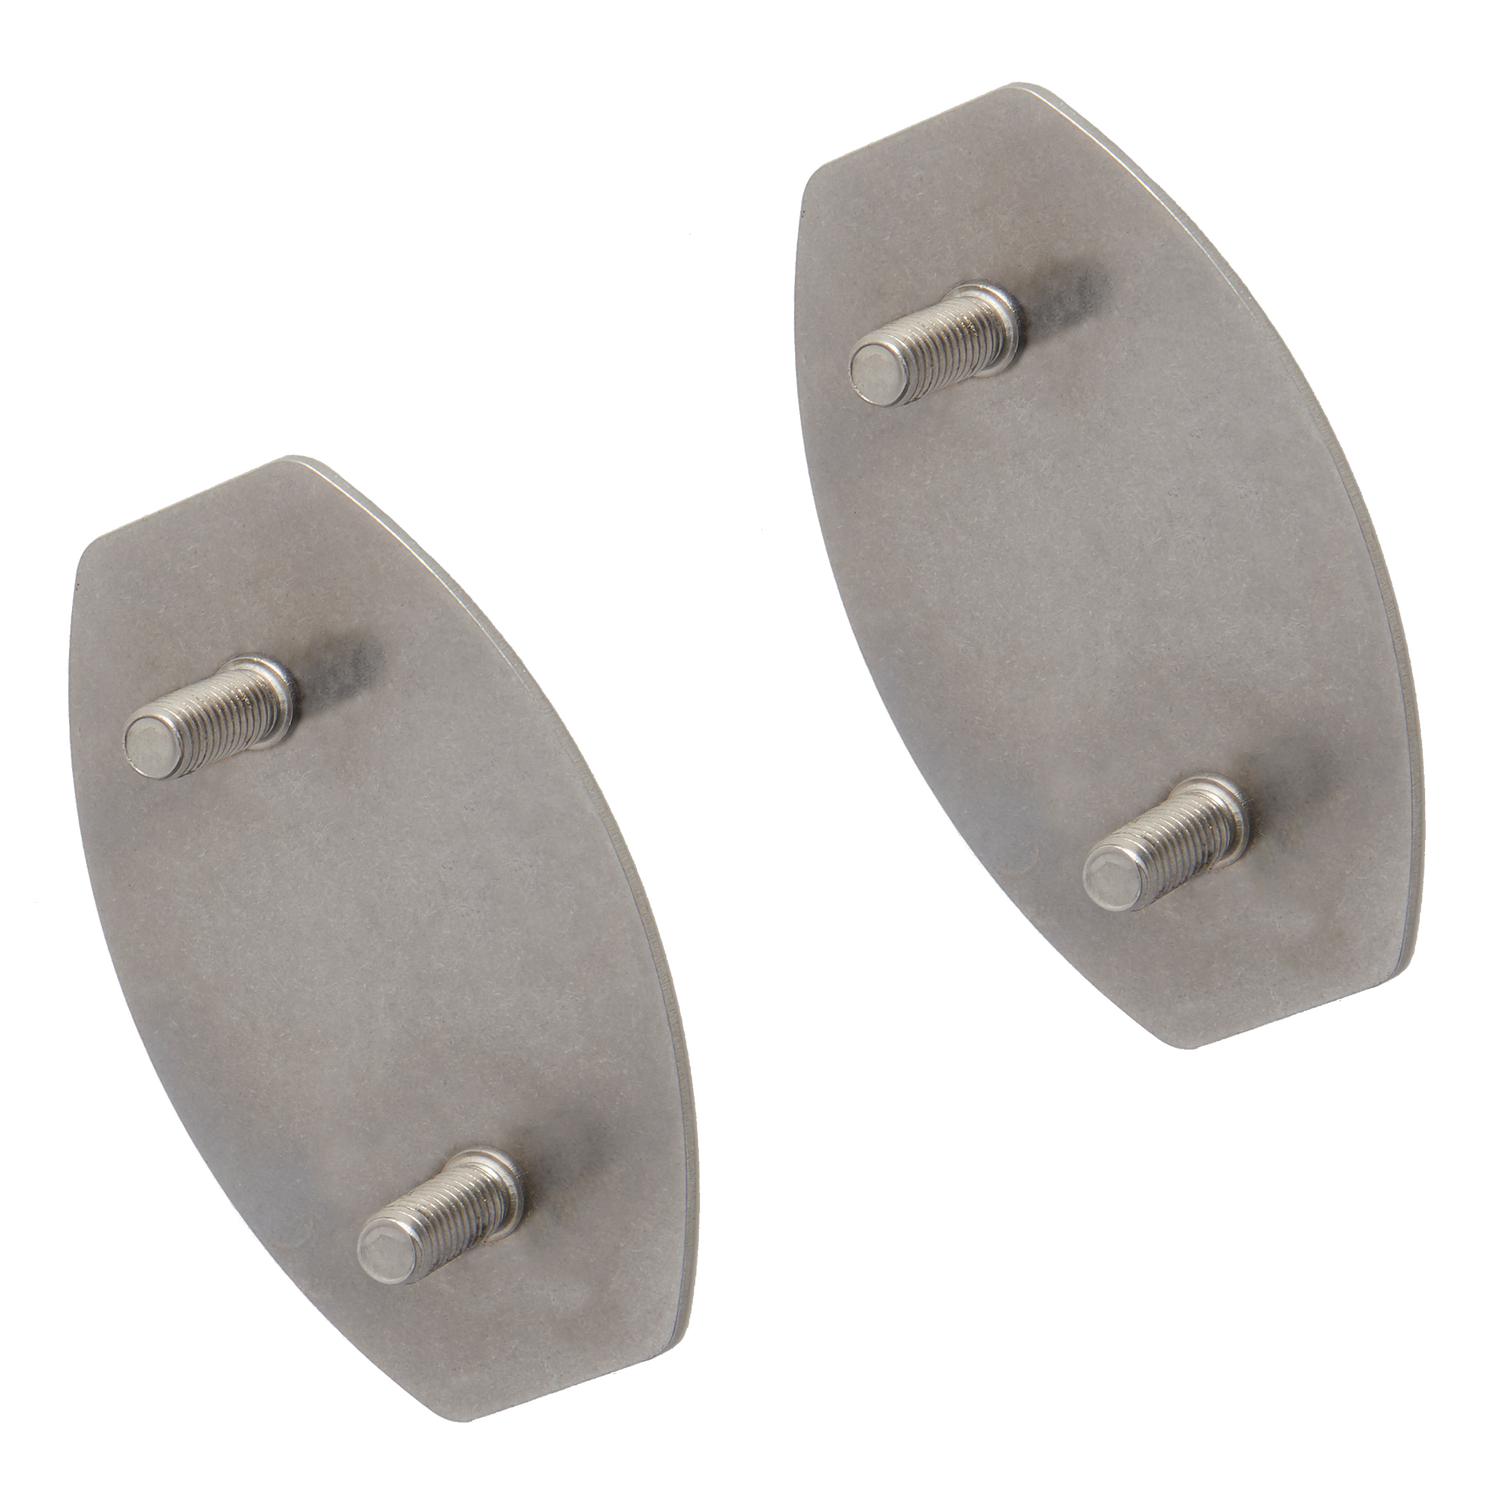 SecuCare Plaquette de fixation en acier inoxydable pour fixation à la colle de la barre d'appui, 2 pièces